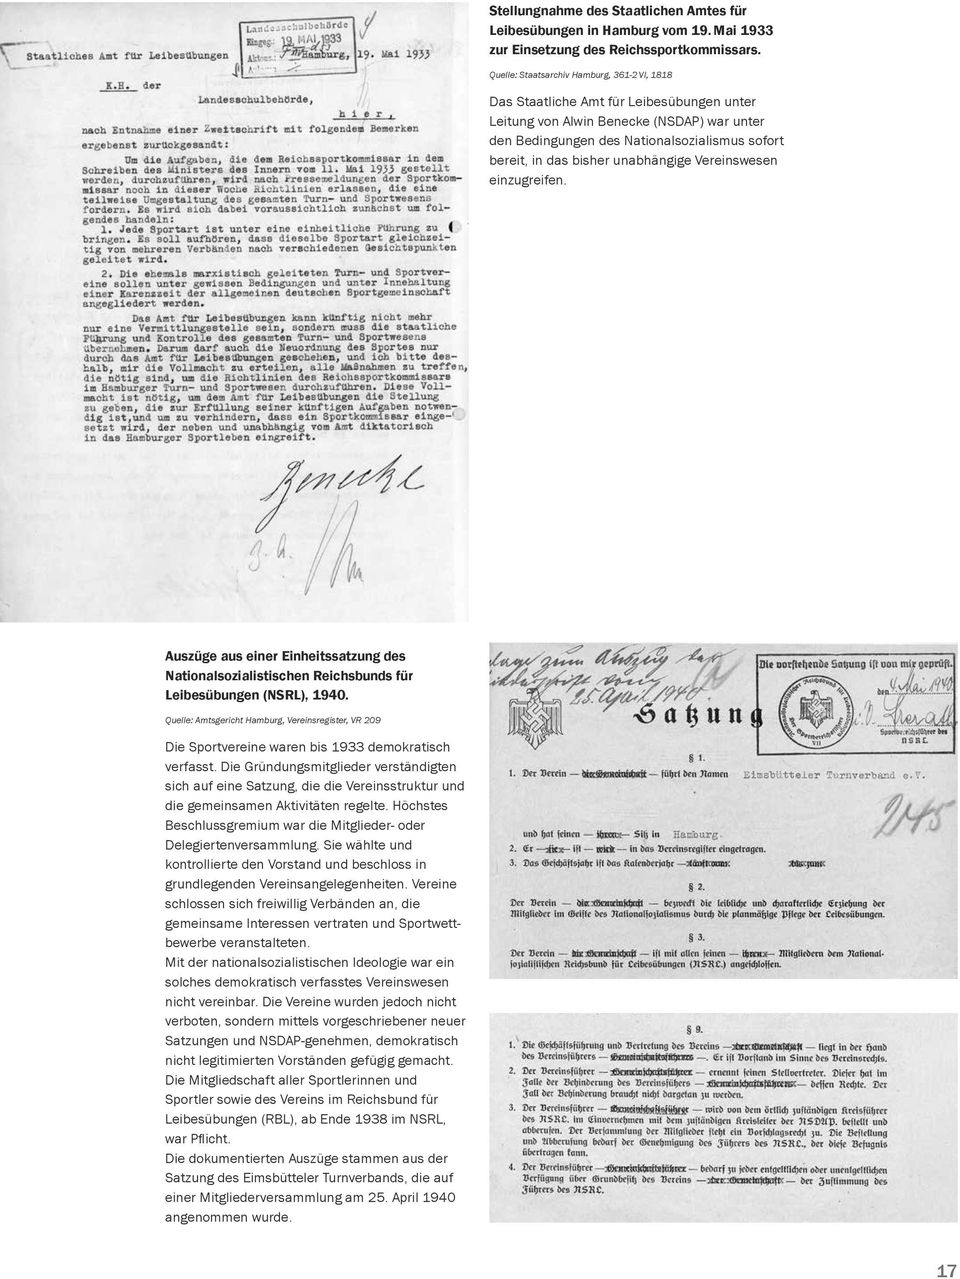 bisher unabhängige Vereinswesen einzugreifen. Auszüge aus einer Einheitssatzung des National sozialistischen Reichsbunds für Leibes übungen (NSRL), 1940.